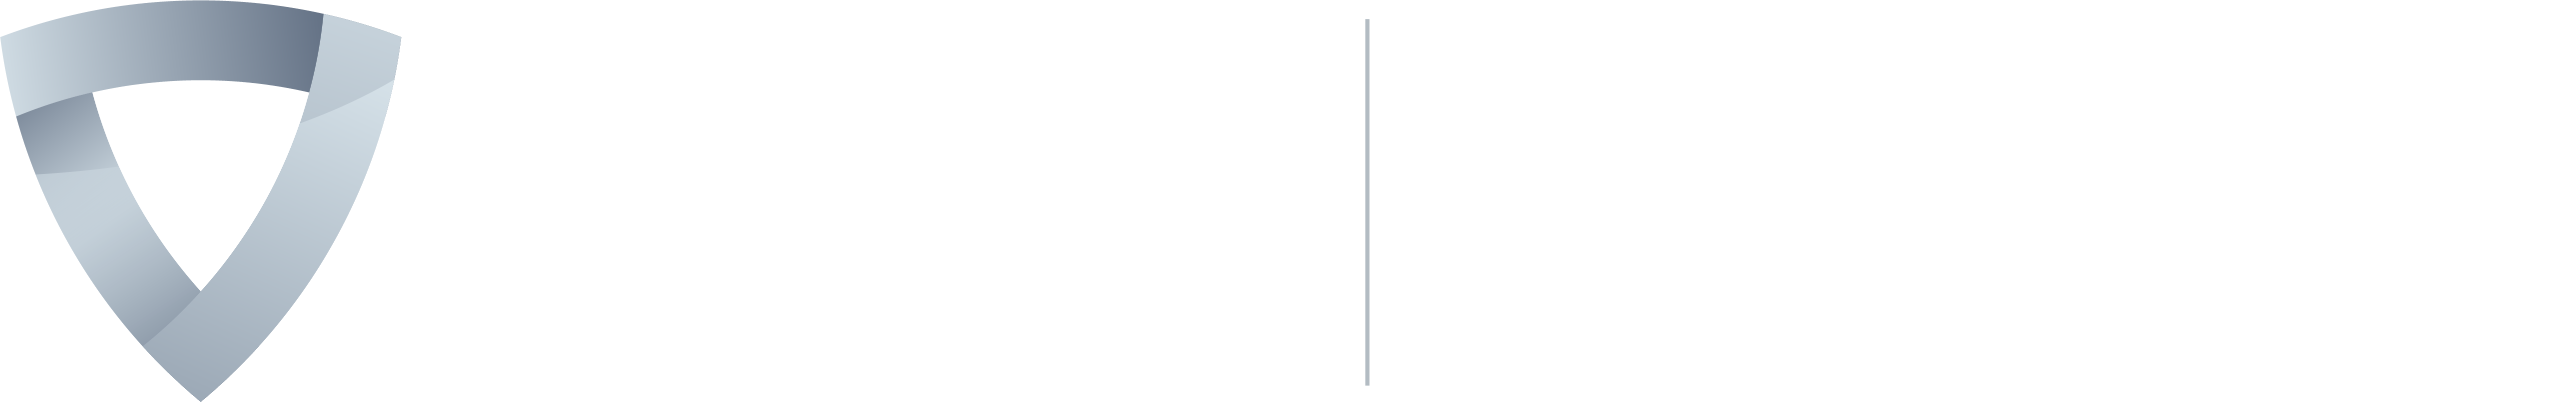 sior-logo-for-dark-background